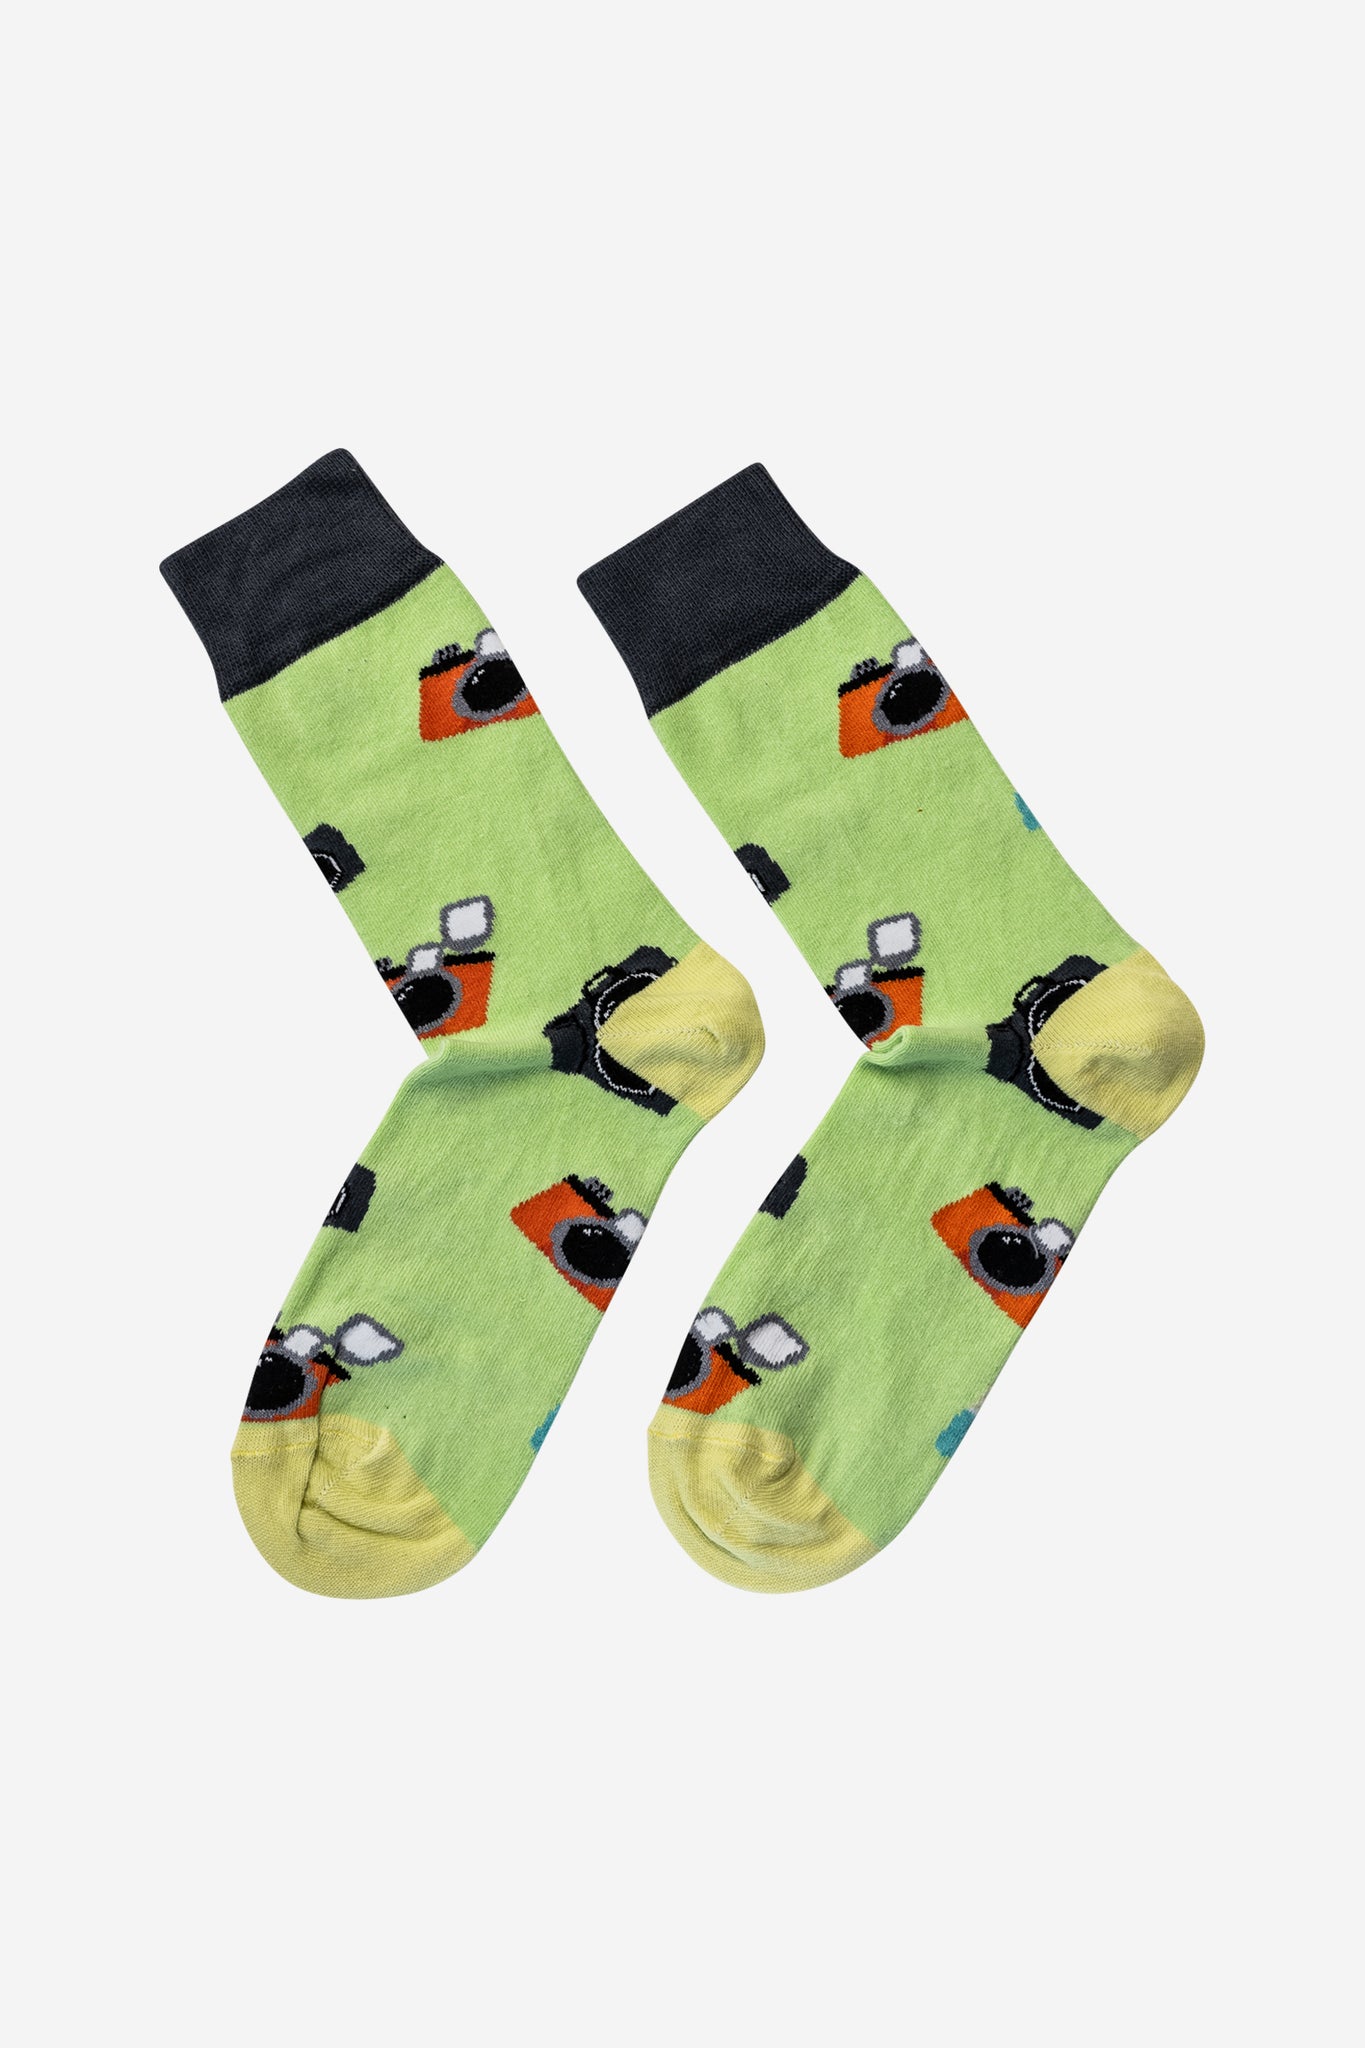 Socken mit Kamera-Motiv. Unisex Freizeit-Socken mit Kamera-Muster. Leuchtendes Grün, passt gut zu Jeans. Mittellang